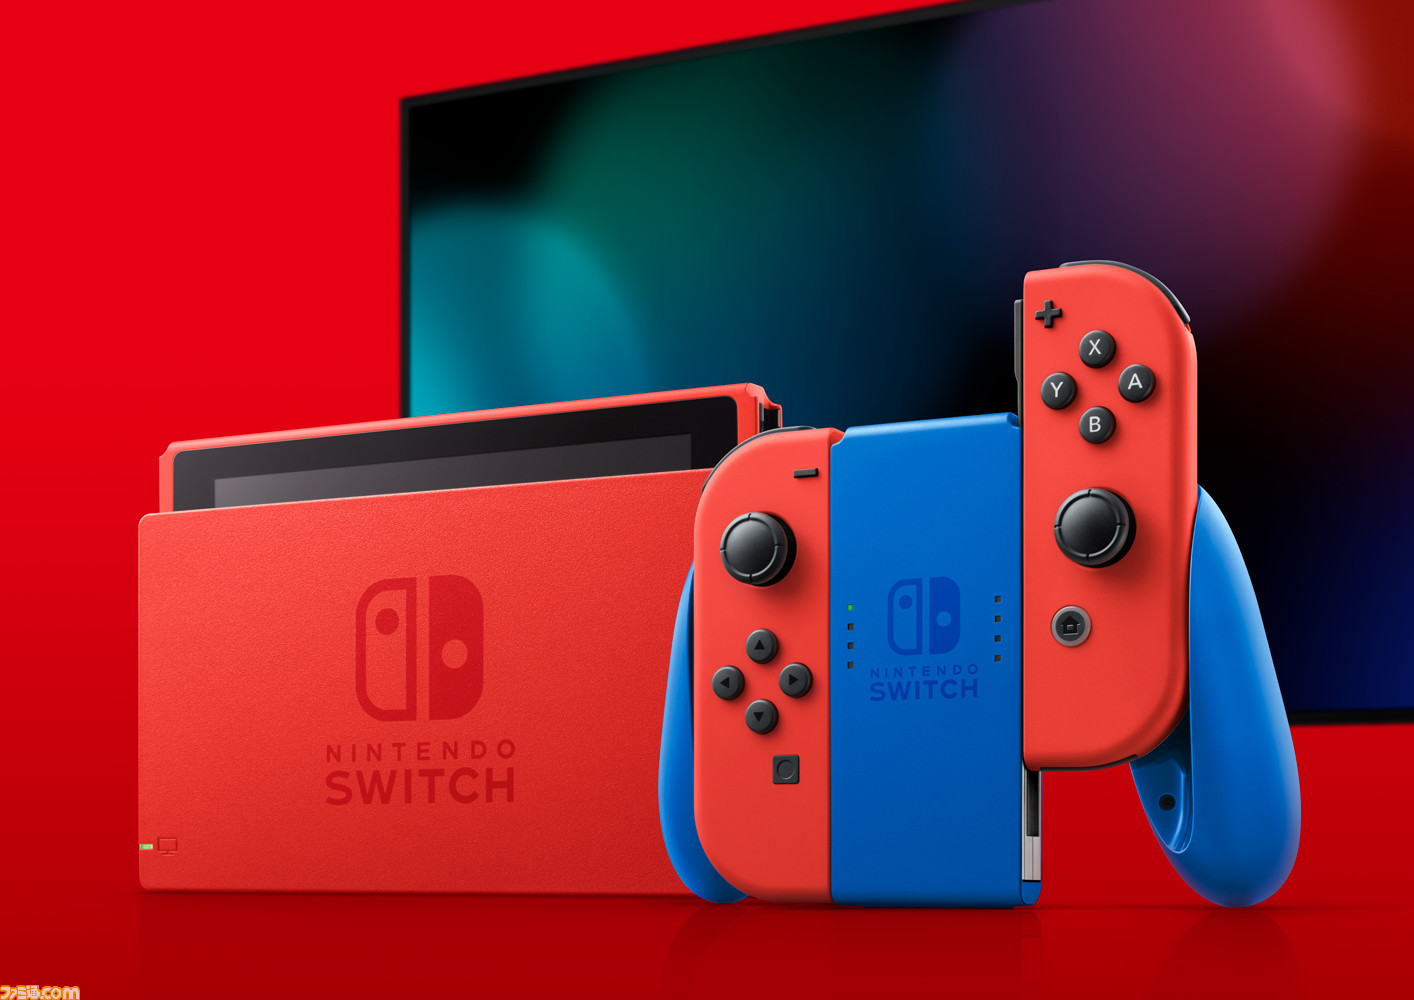 Nintendo Switch新色“マリオレッド×ブルー セット”2月12日発売決定。本体部分が赤になった、初の本体カラー変更モデル |  ゲーム・エンタメ最新情報のファミ通.com